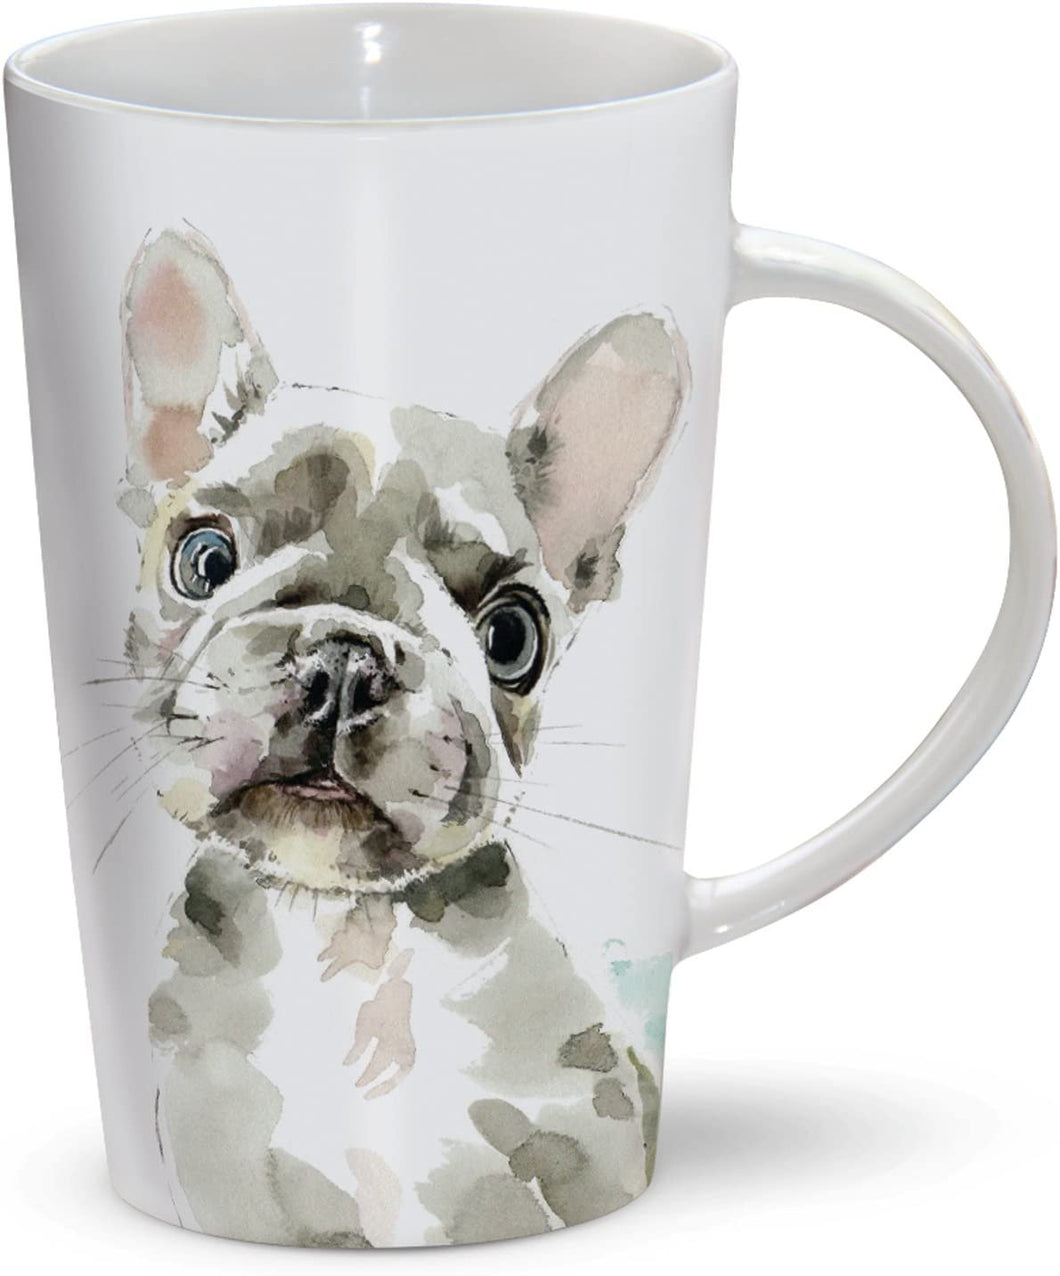 The Riverbank Mug - French Bulldog